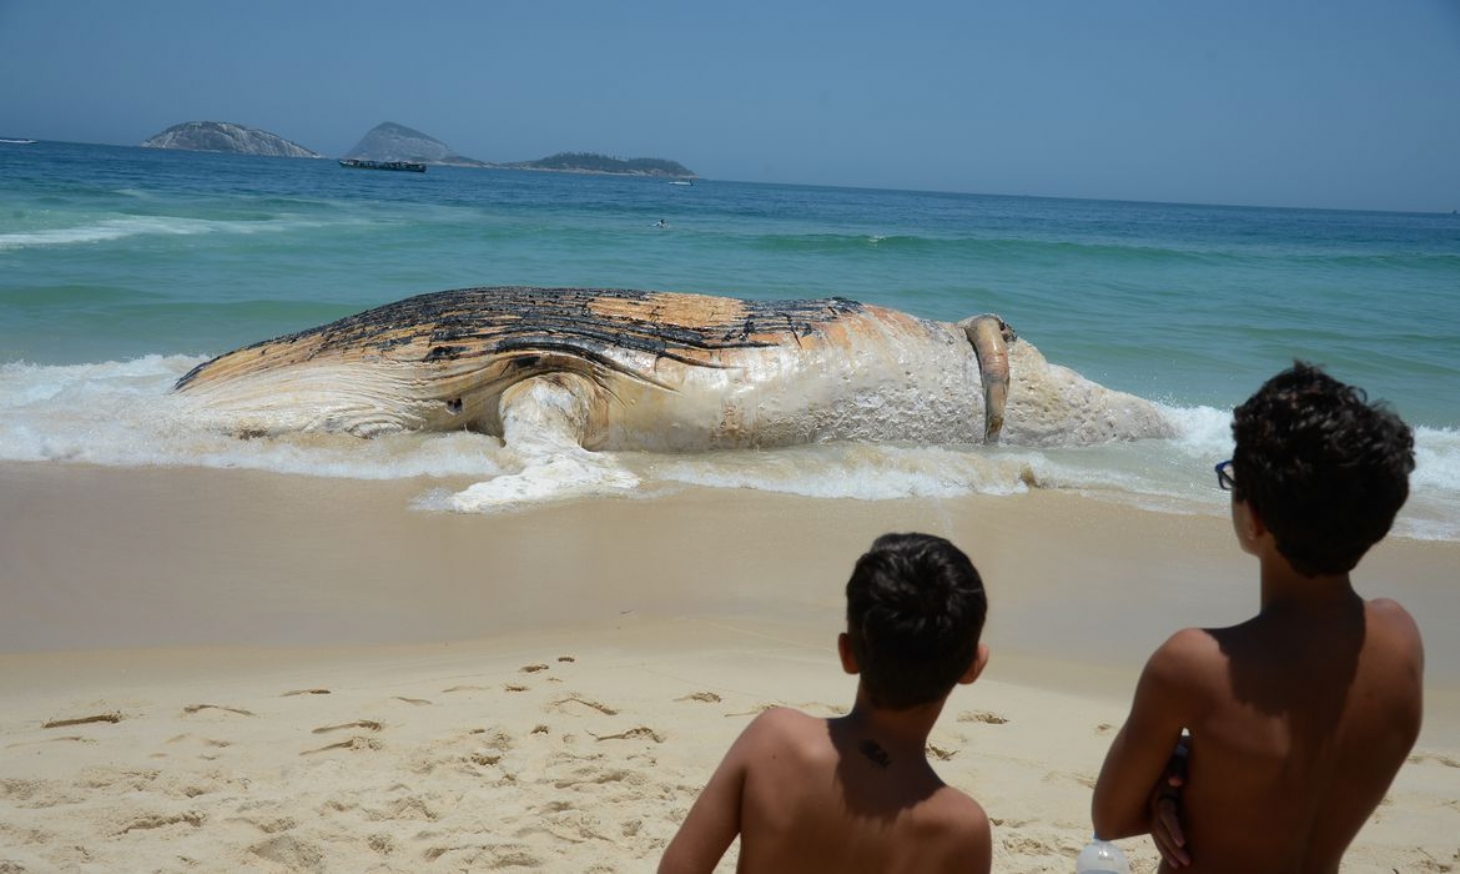 Monitoramento de praias já devolveu à natureza mais de 2,7 mil animais | Jornal da Orla